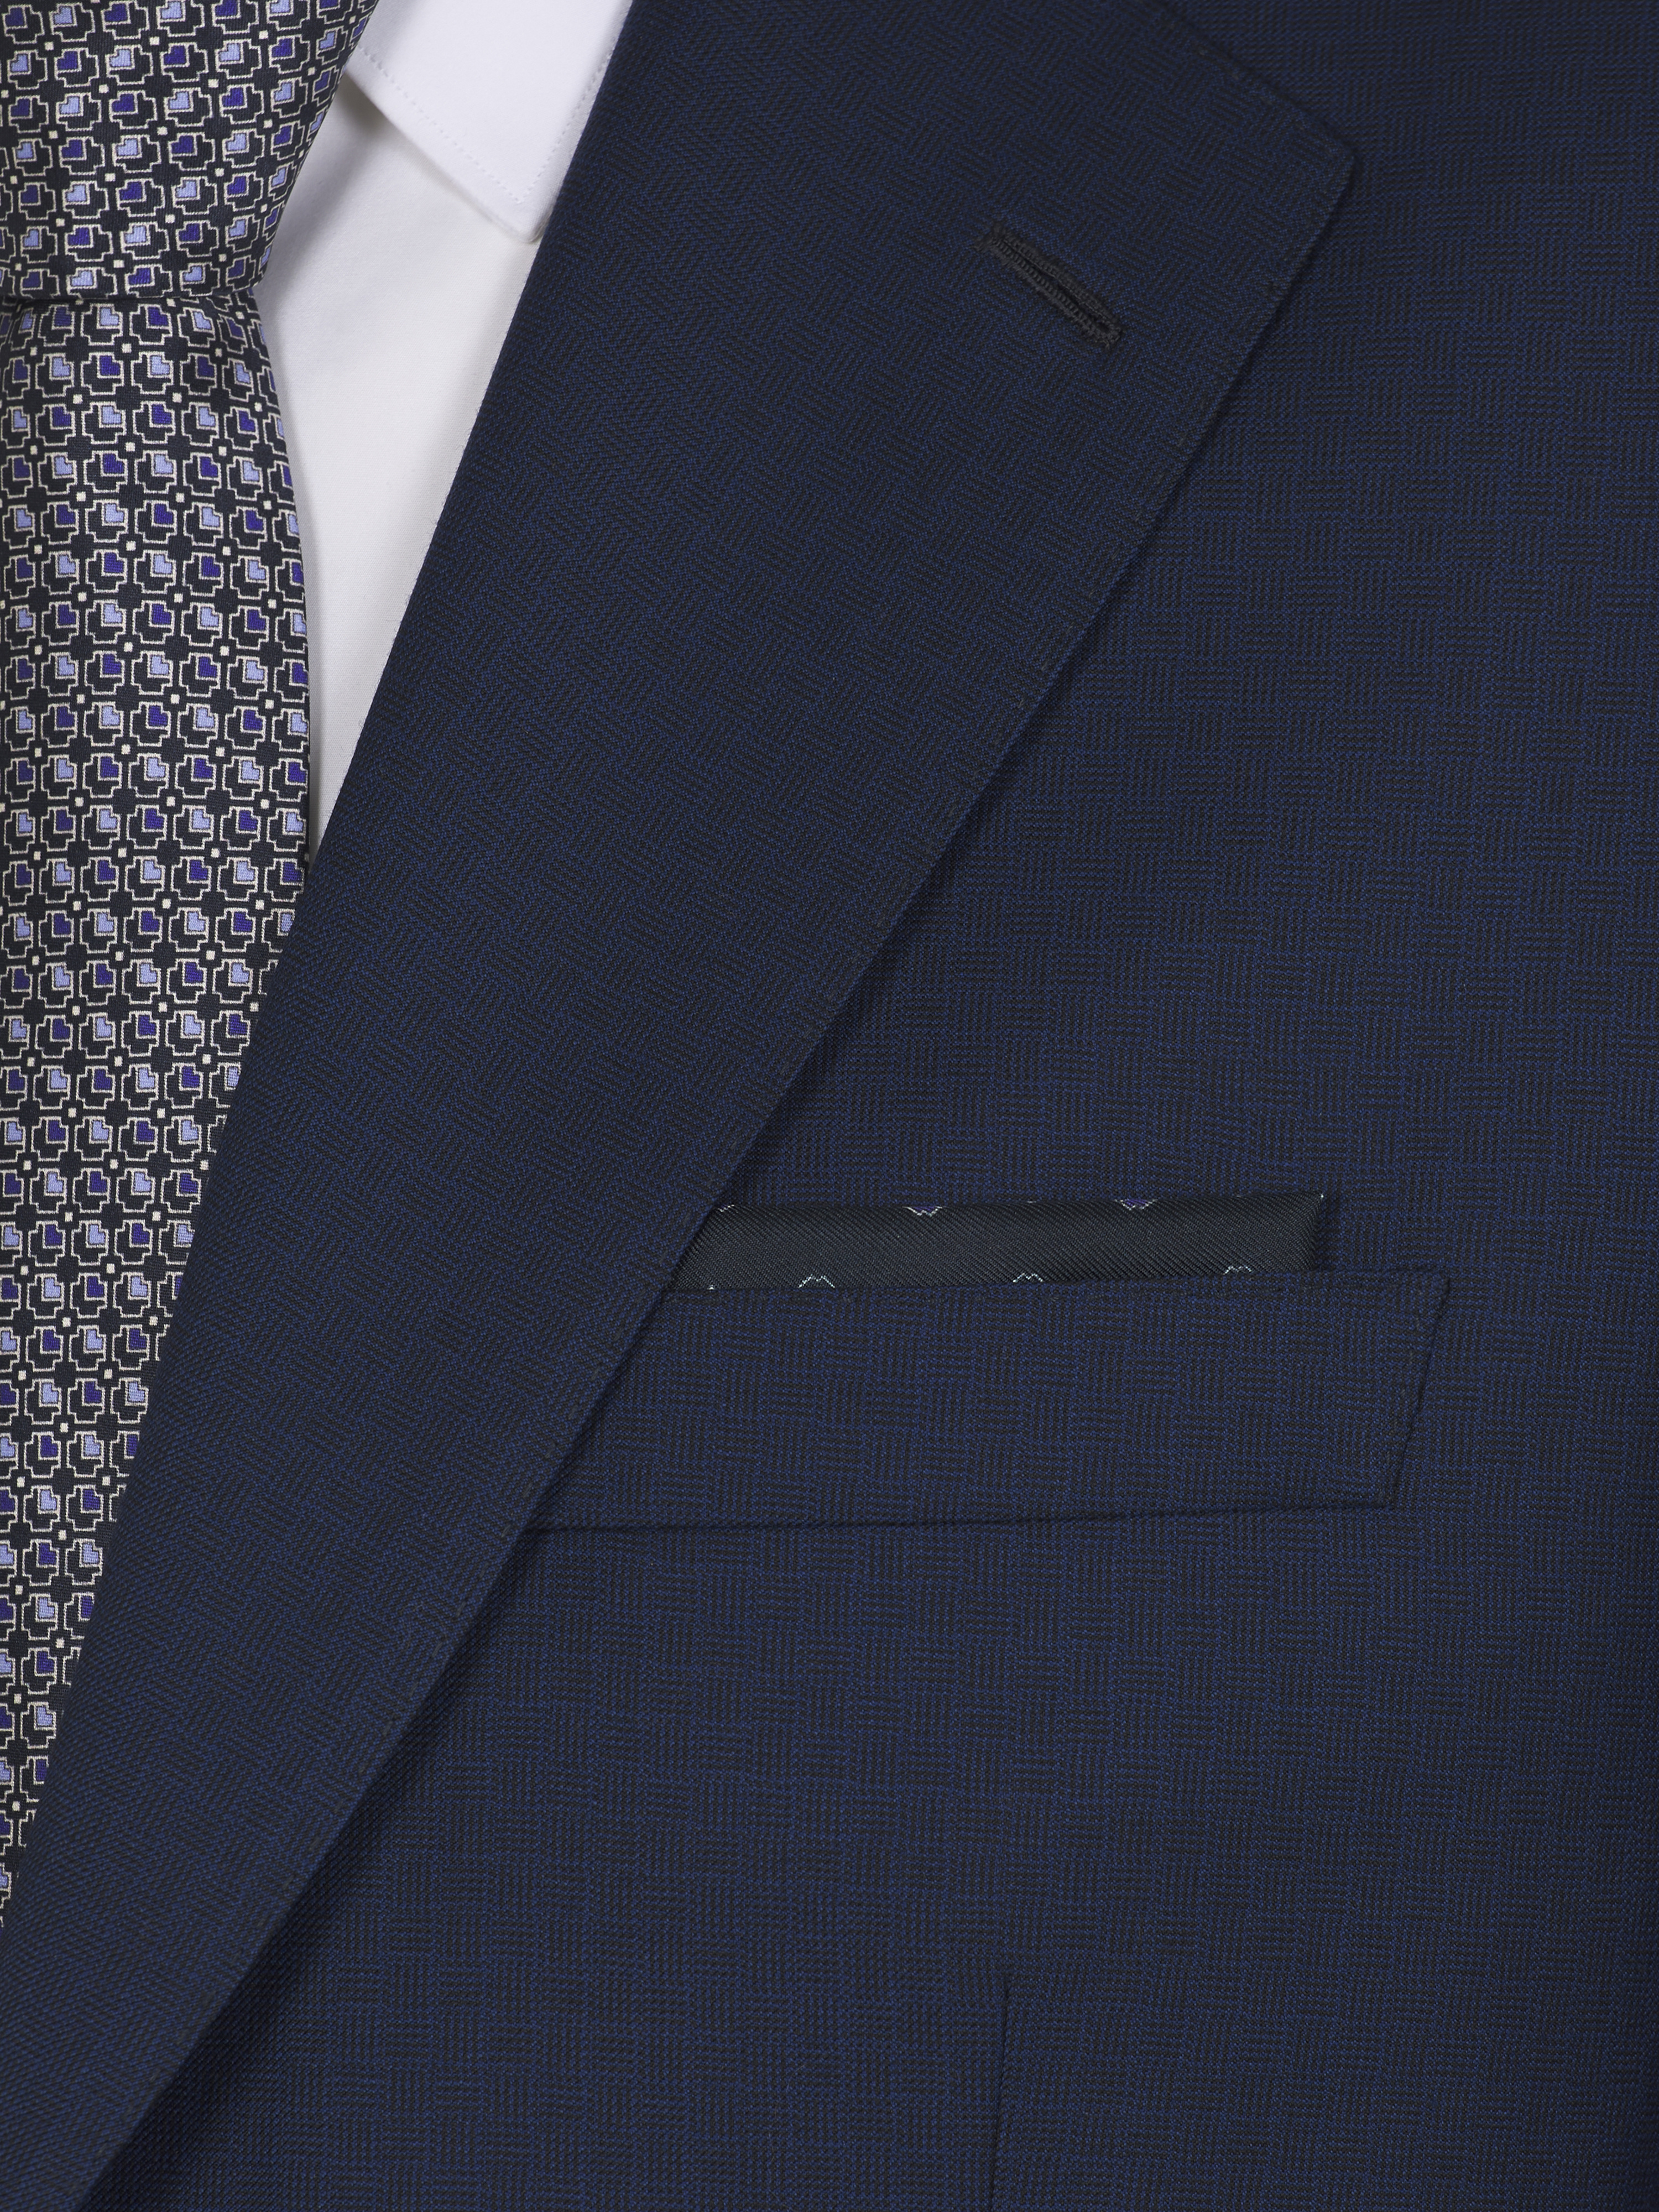 ネクタイとポケットチーフ | ブリオーニ® 日本 公式ストア